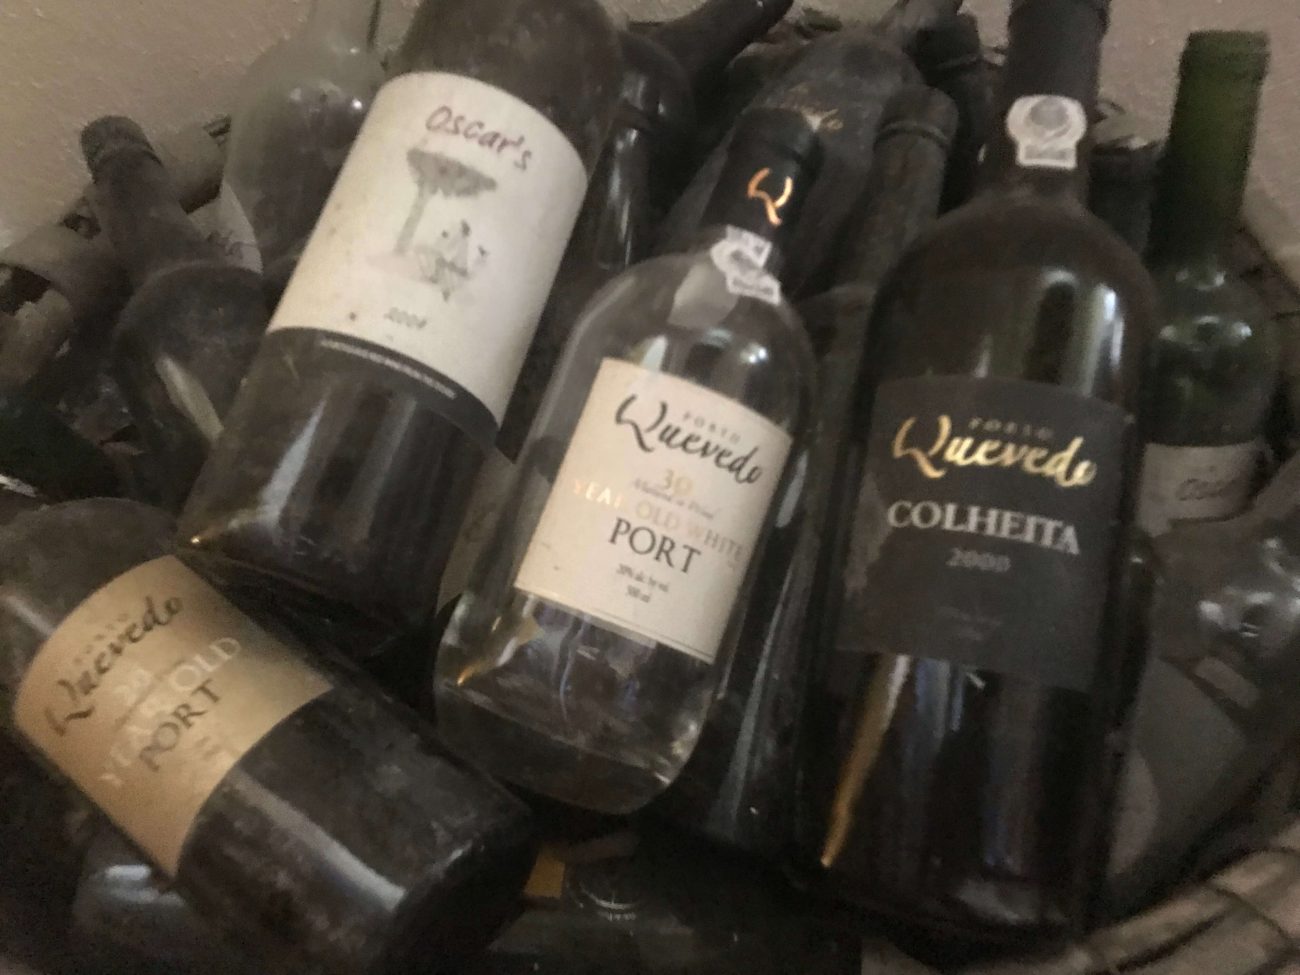 Portweinflaschen mit leeren Portweinflaschen von Oscar Quevedo